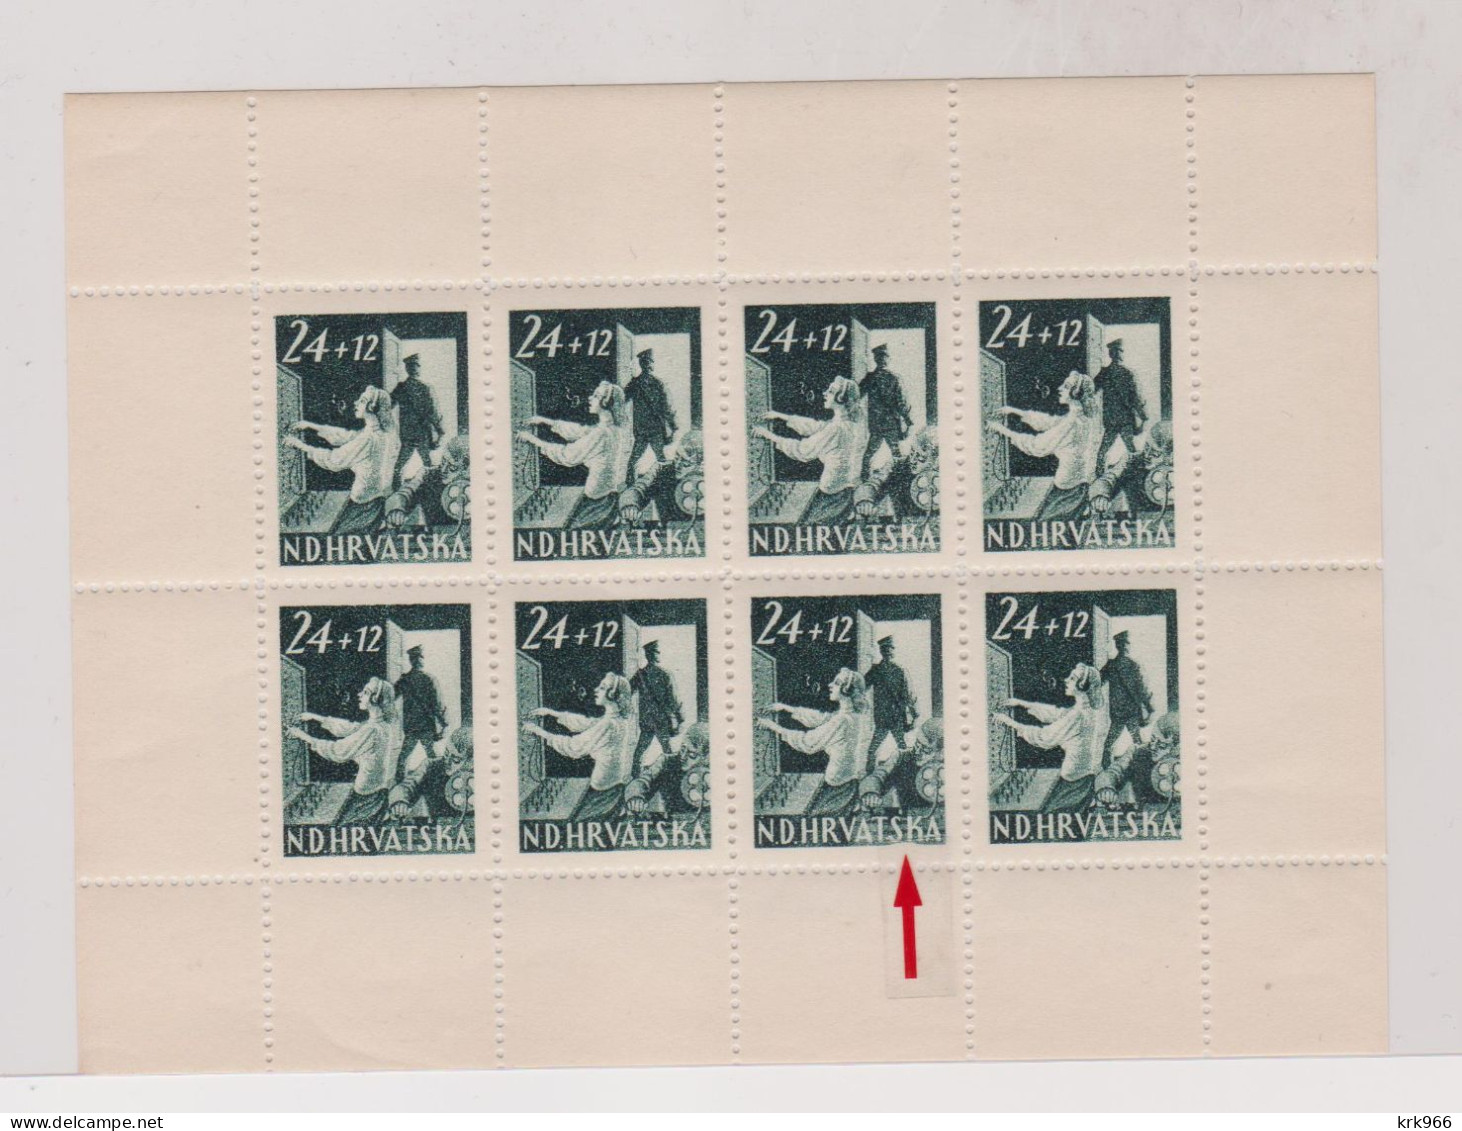 CROATIA, WW II  1945 Postman  Sheet Plate Error  ,MNH - Kroatien